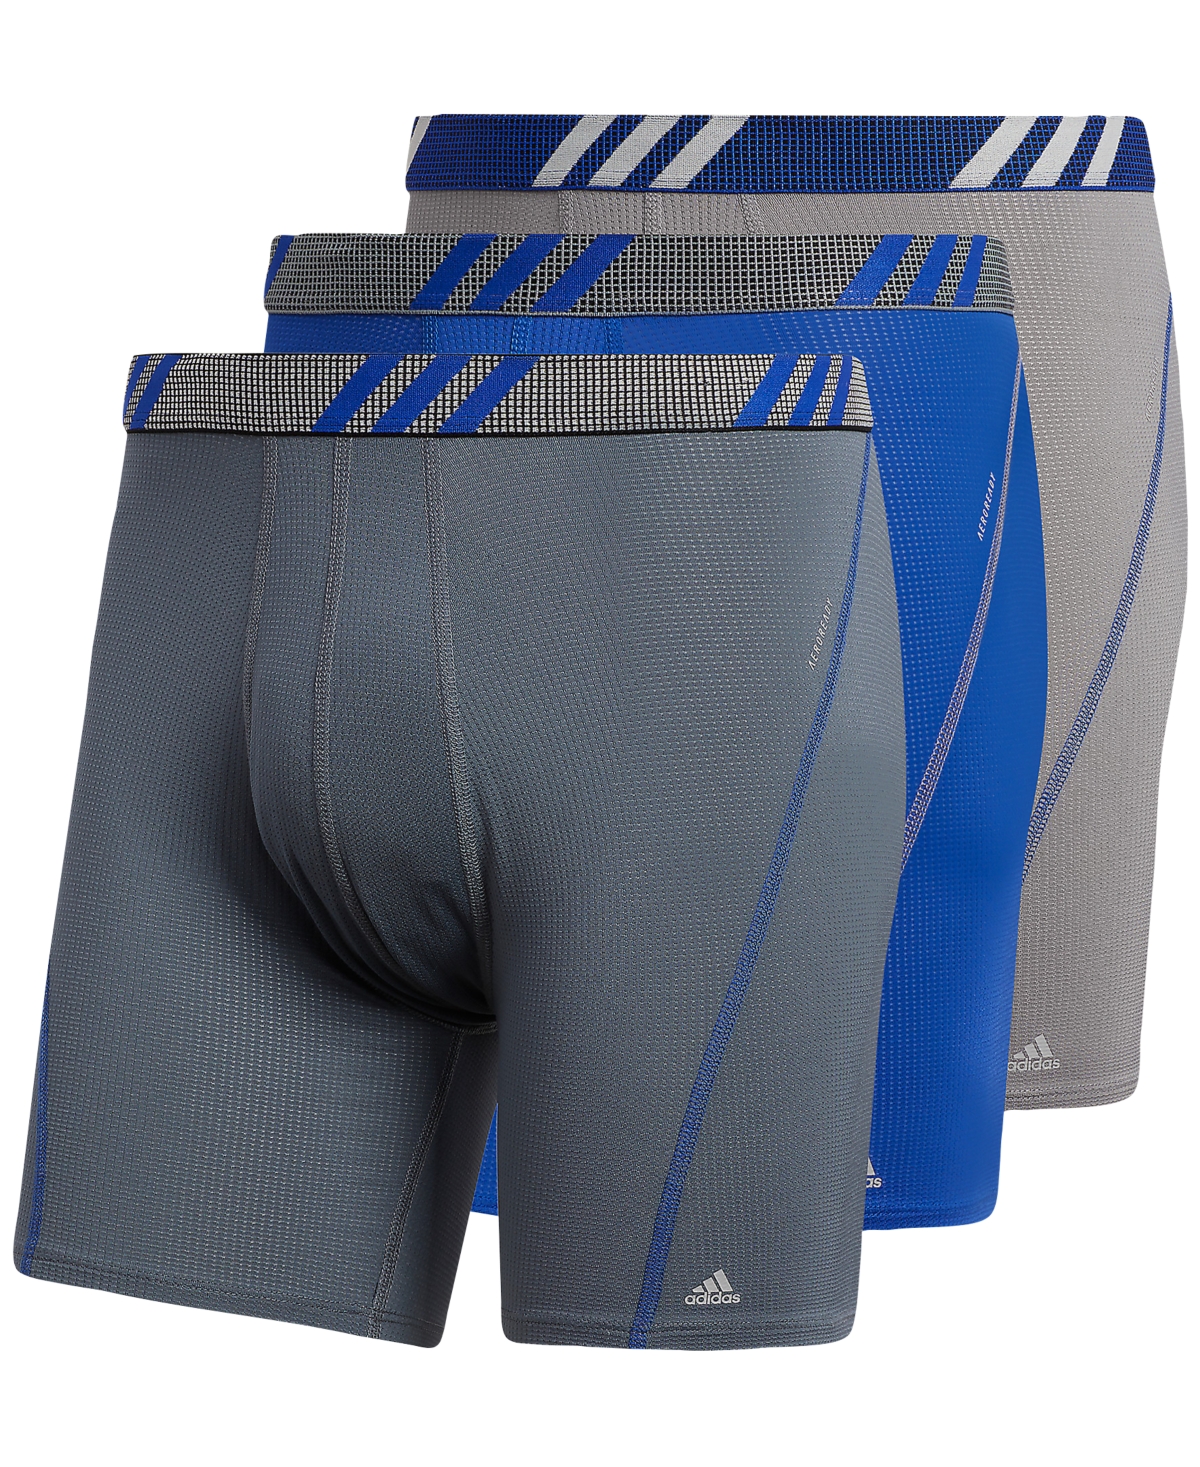 adidas Men's Sport Performance Mesh Boxer Briefs - 3-Pack | Shop Your ...